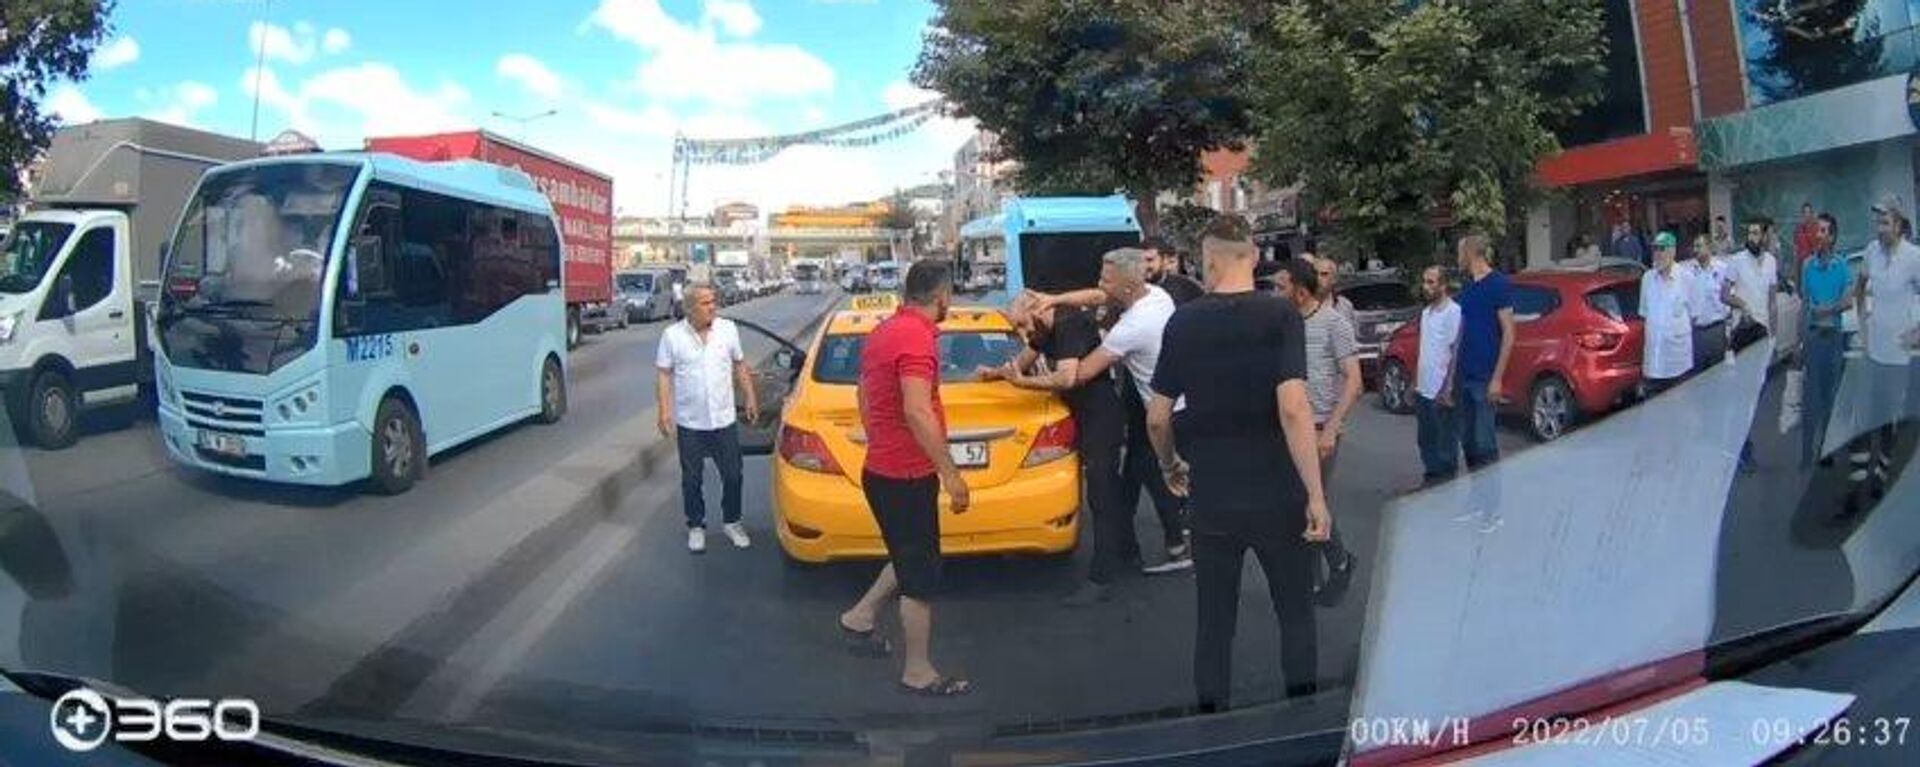 Pendik’te taksideki kadına saldıran şahsa meydan dayağı - Sputnik Türkiye, 1920, 07.07.2022